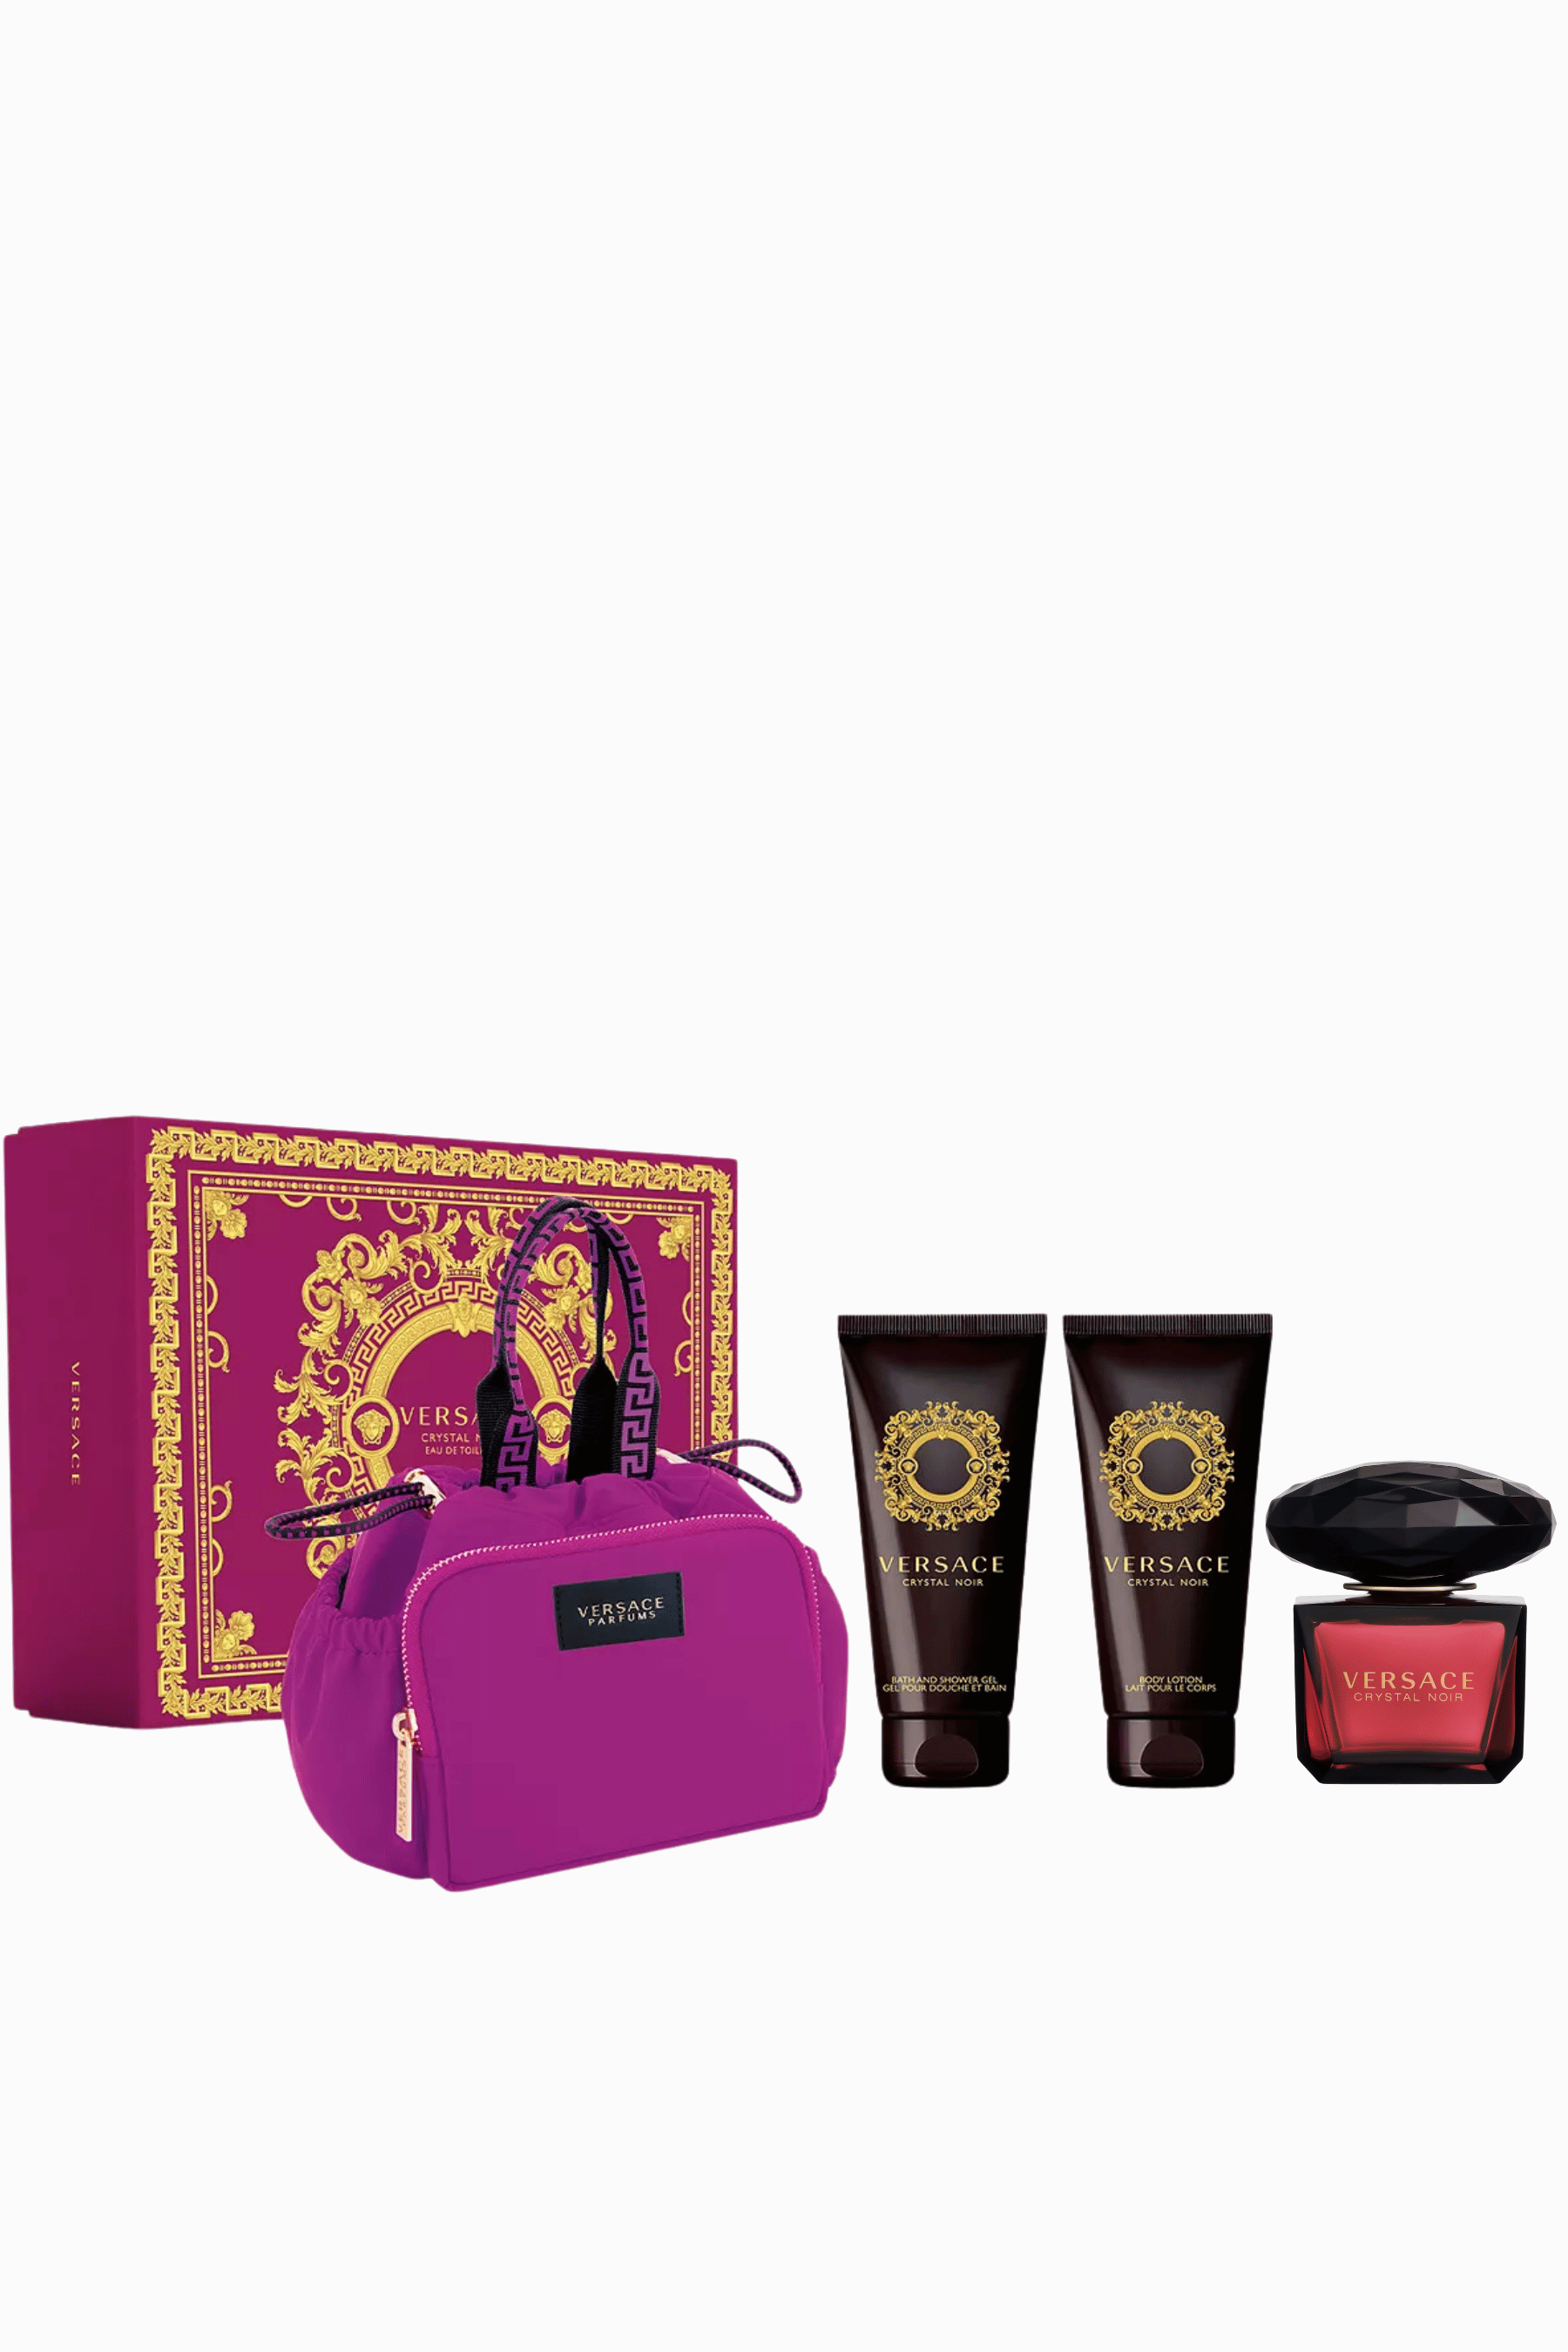 Versace | Crystal Noir Eau de Toilette 4 Piece Gift Set